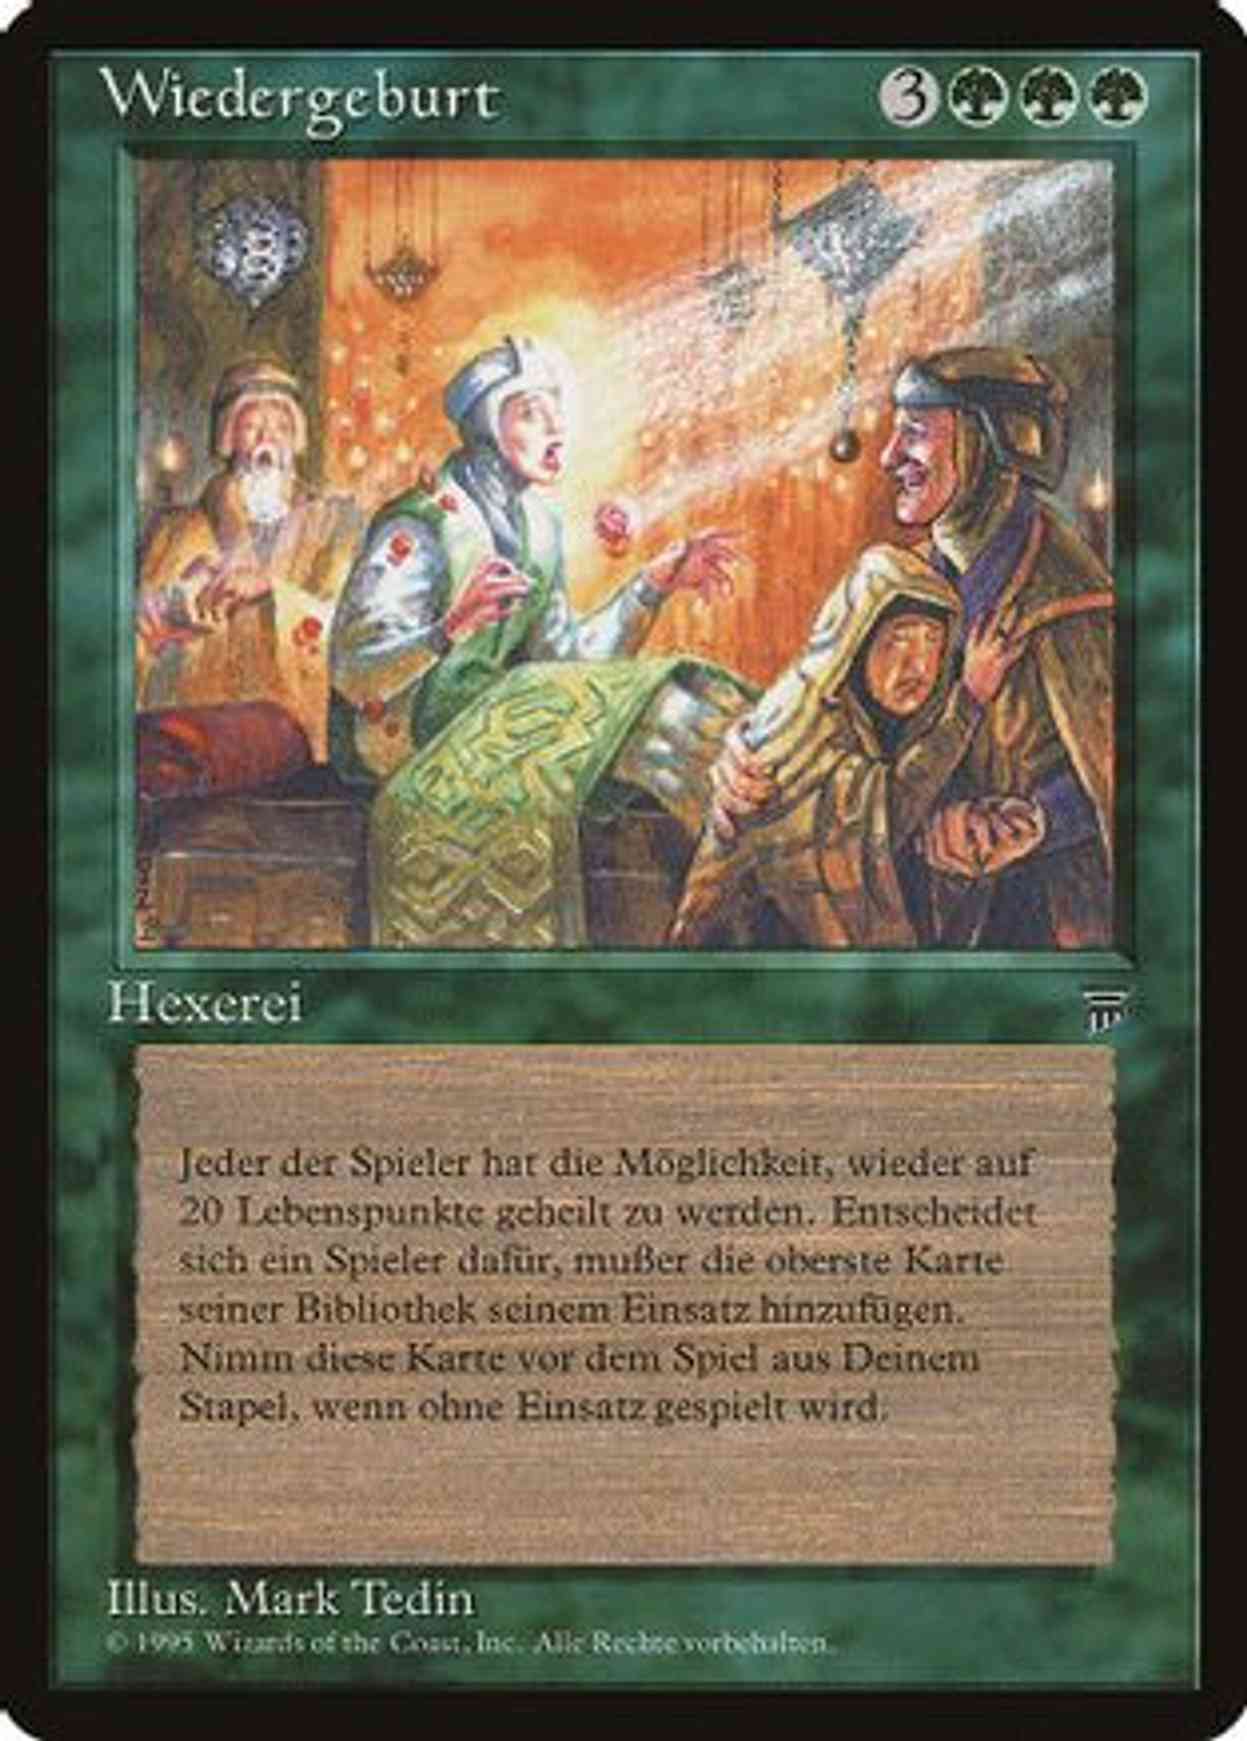 Rebirth (German) - "Wiedergeburt" magic card front